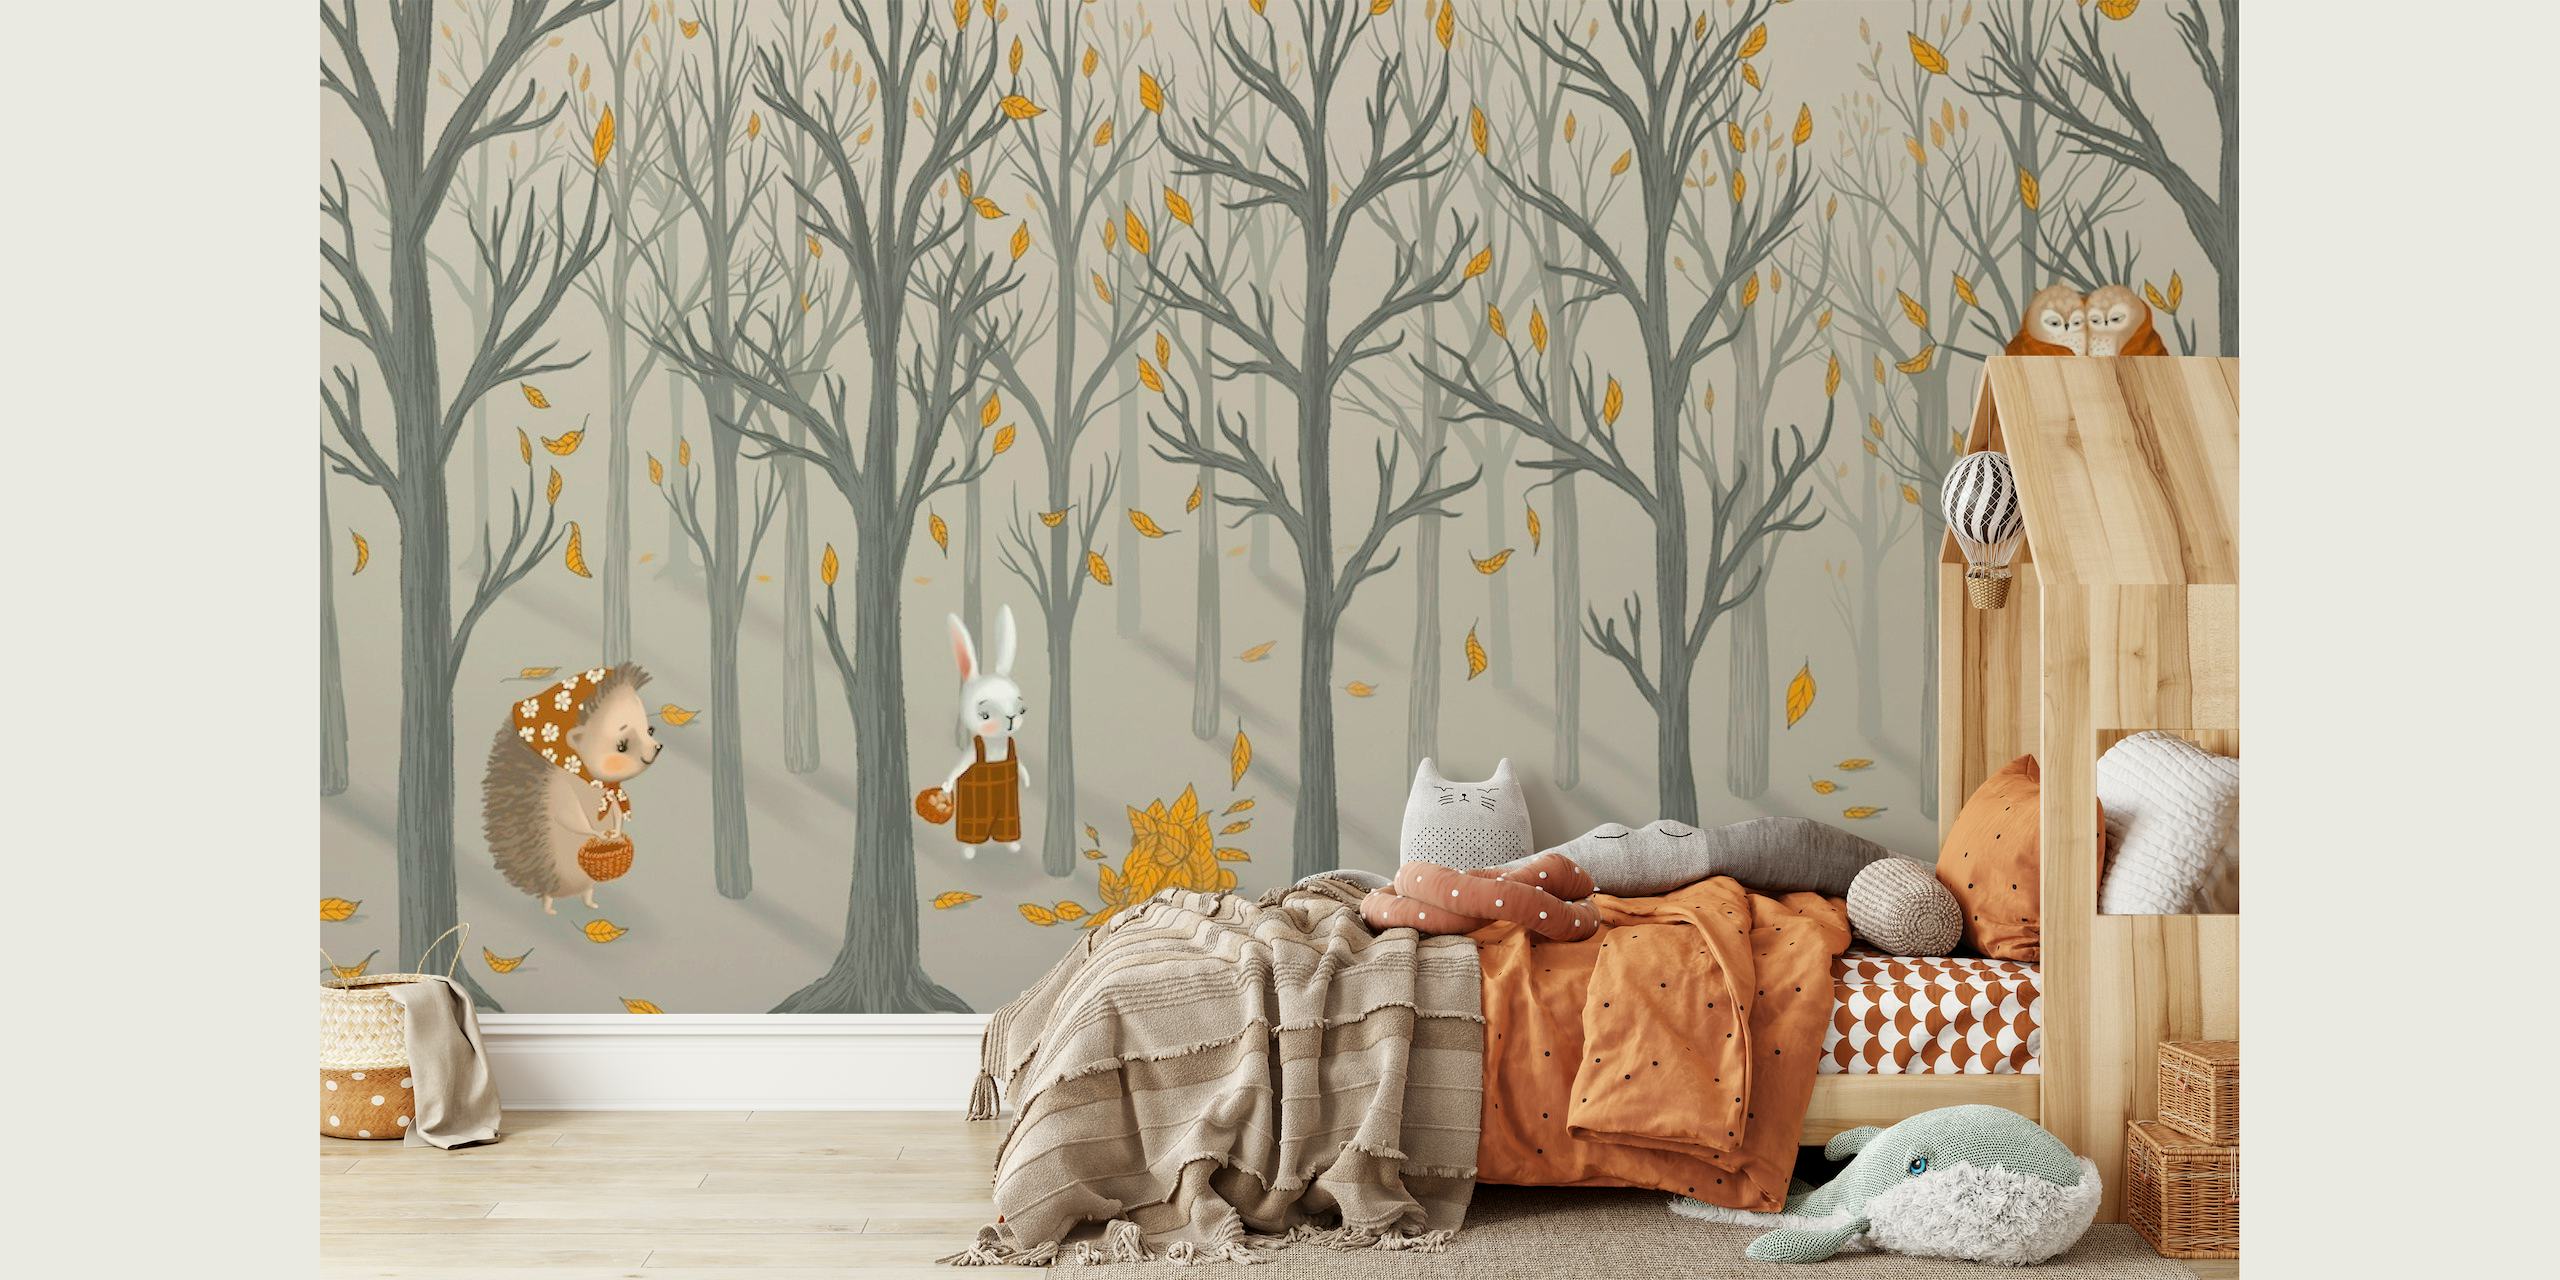 Autumn forest friends wallpaper